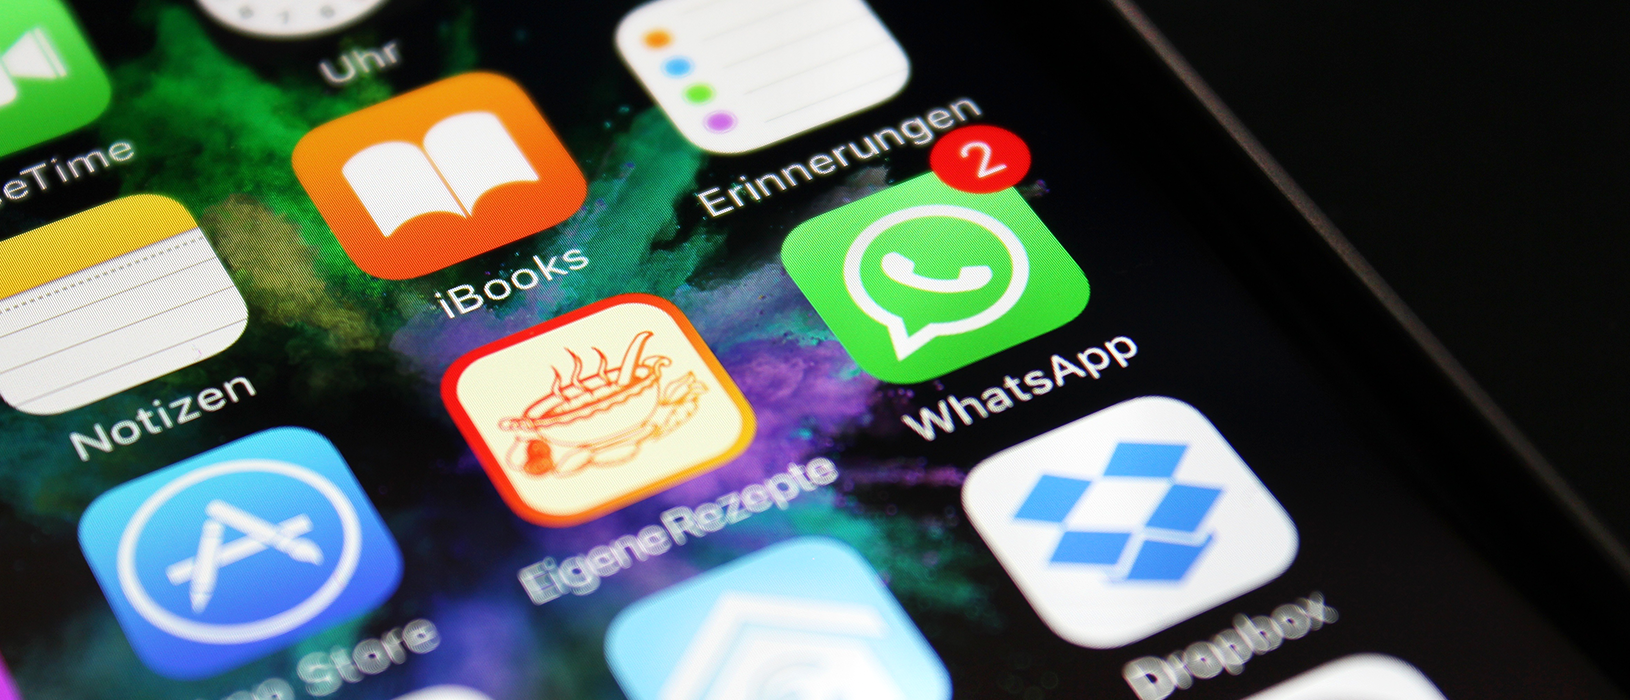 WhatsApp-Marketing nimmt in der Messenger-Welt einen immer höheren Stellenwert ein. Foto: Pixabay